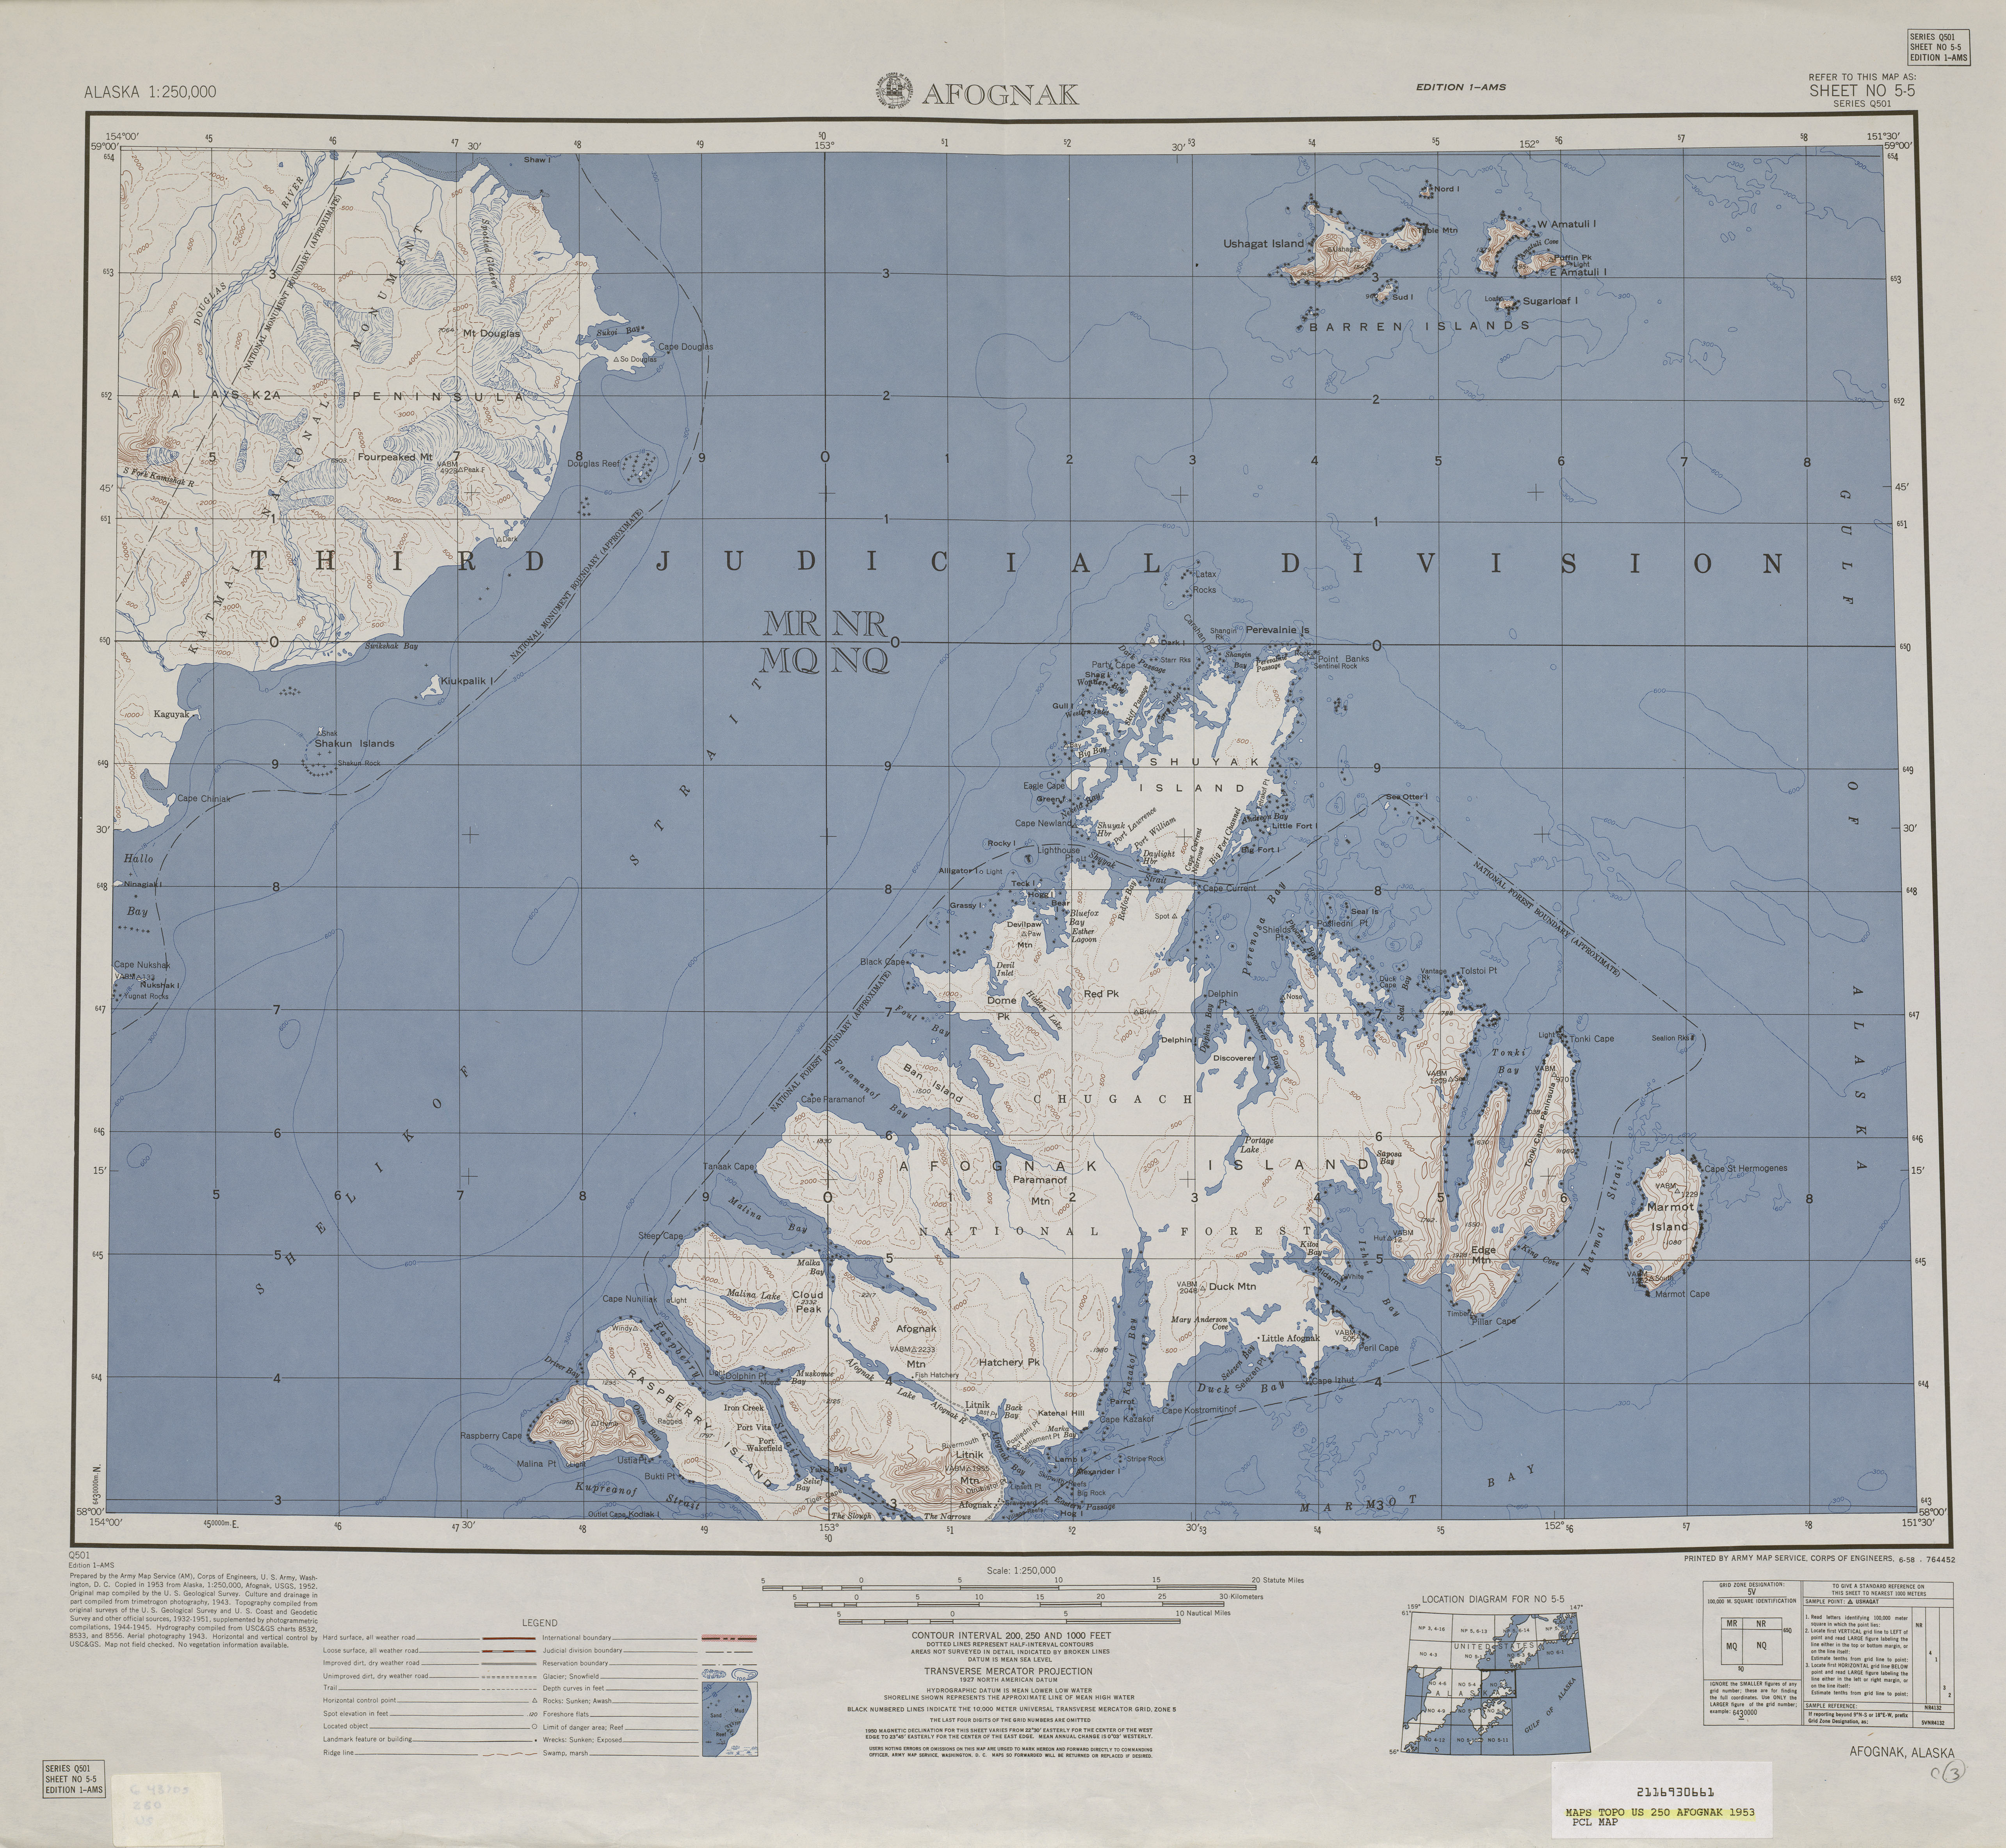 Hoja Afognak del Mapa Topográfico de los Estados Unidos 1953